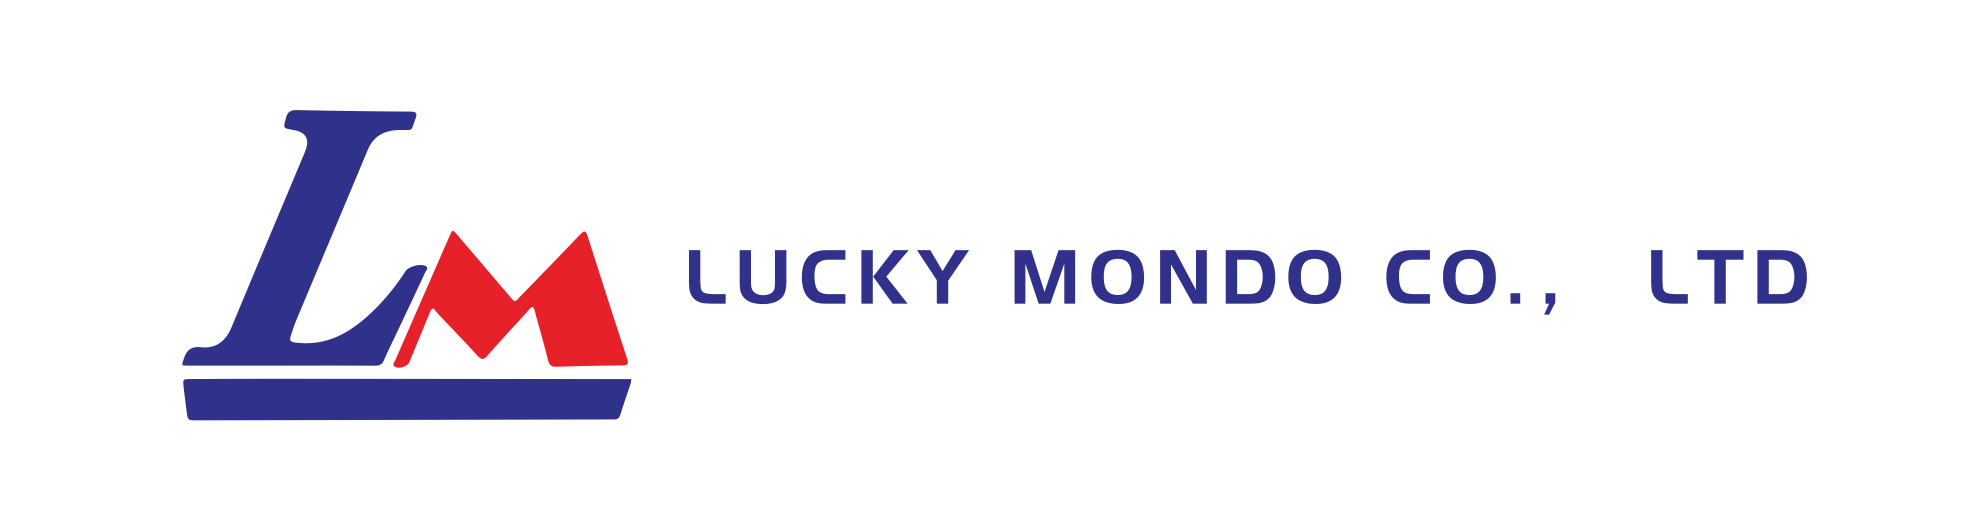 Lucky Mondo Co., Ltd